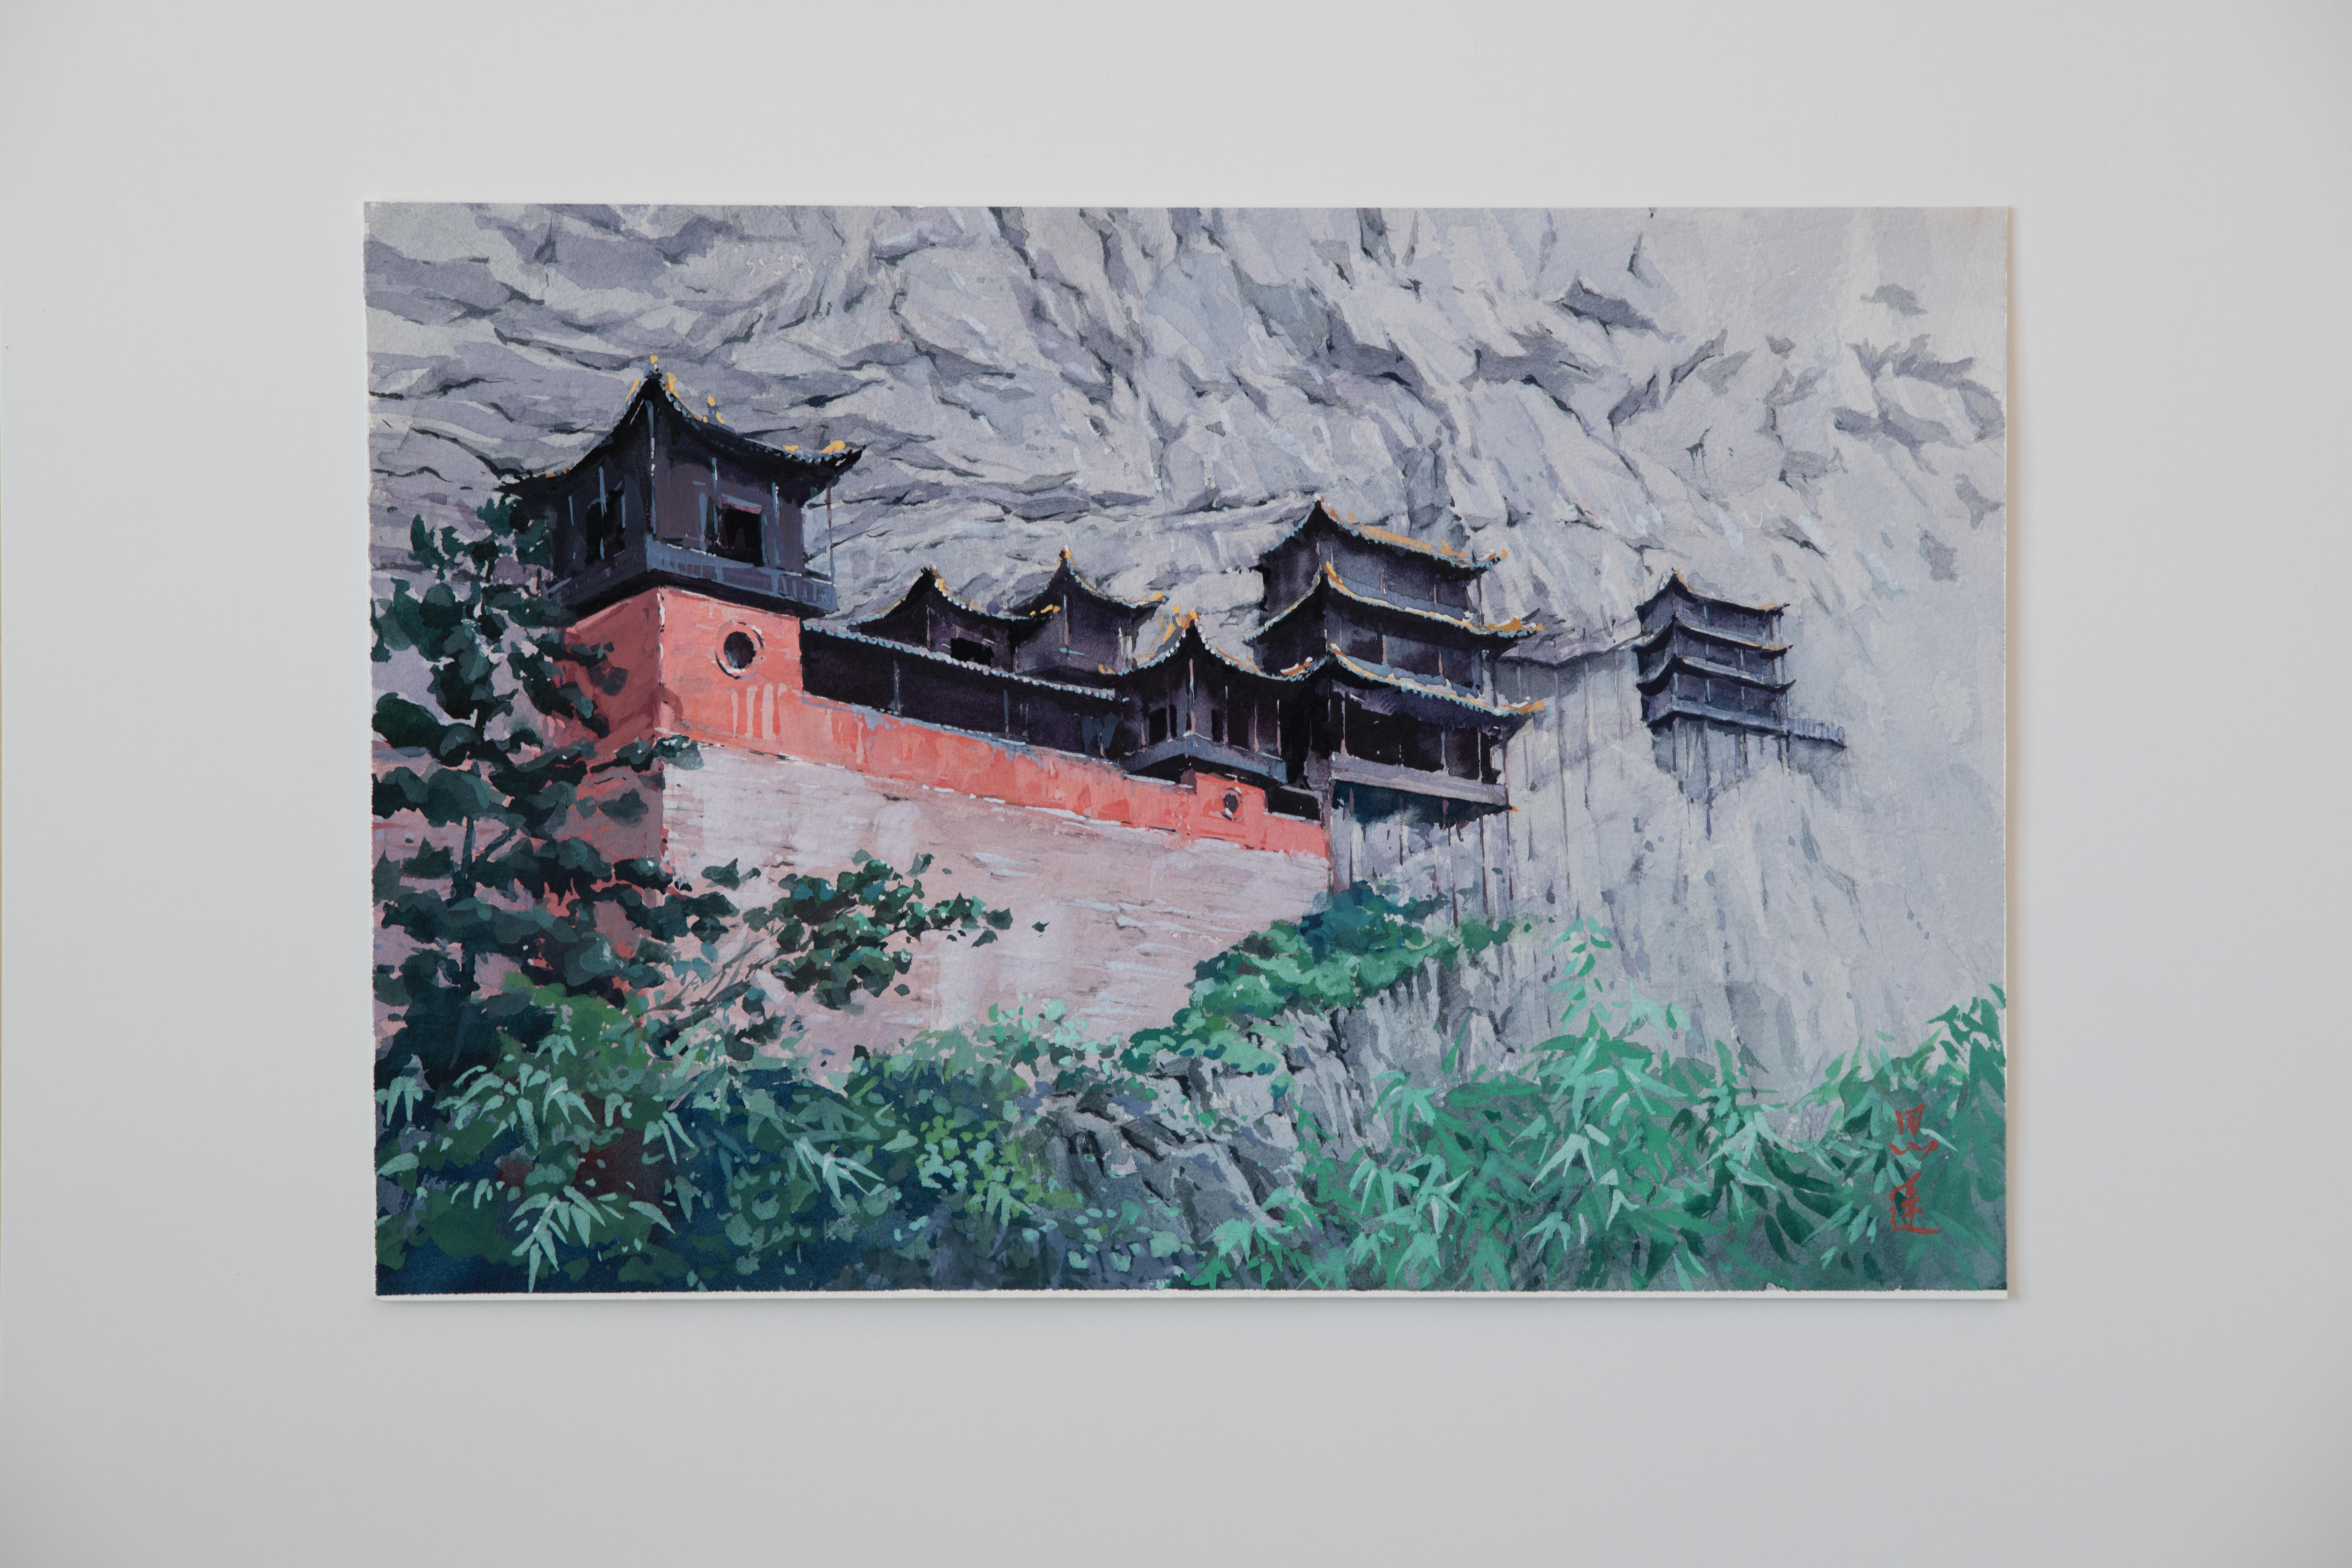 <p>Kommentare des Künstlers<br>Der Künstler Siyuan Ma zeigt eine Ansicht des Hängenden Tempels, eines berühmten kulturellen Wahrzeichens in China. Sein chinesischer Name leitet sich von dem Schriftzeichen 